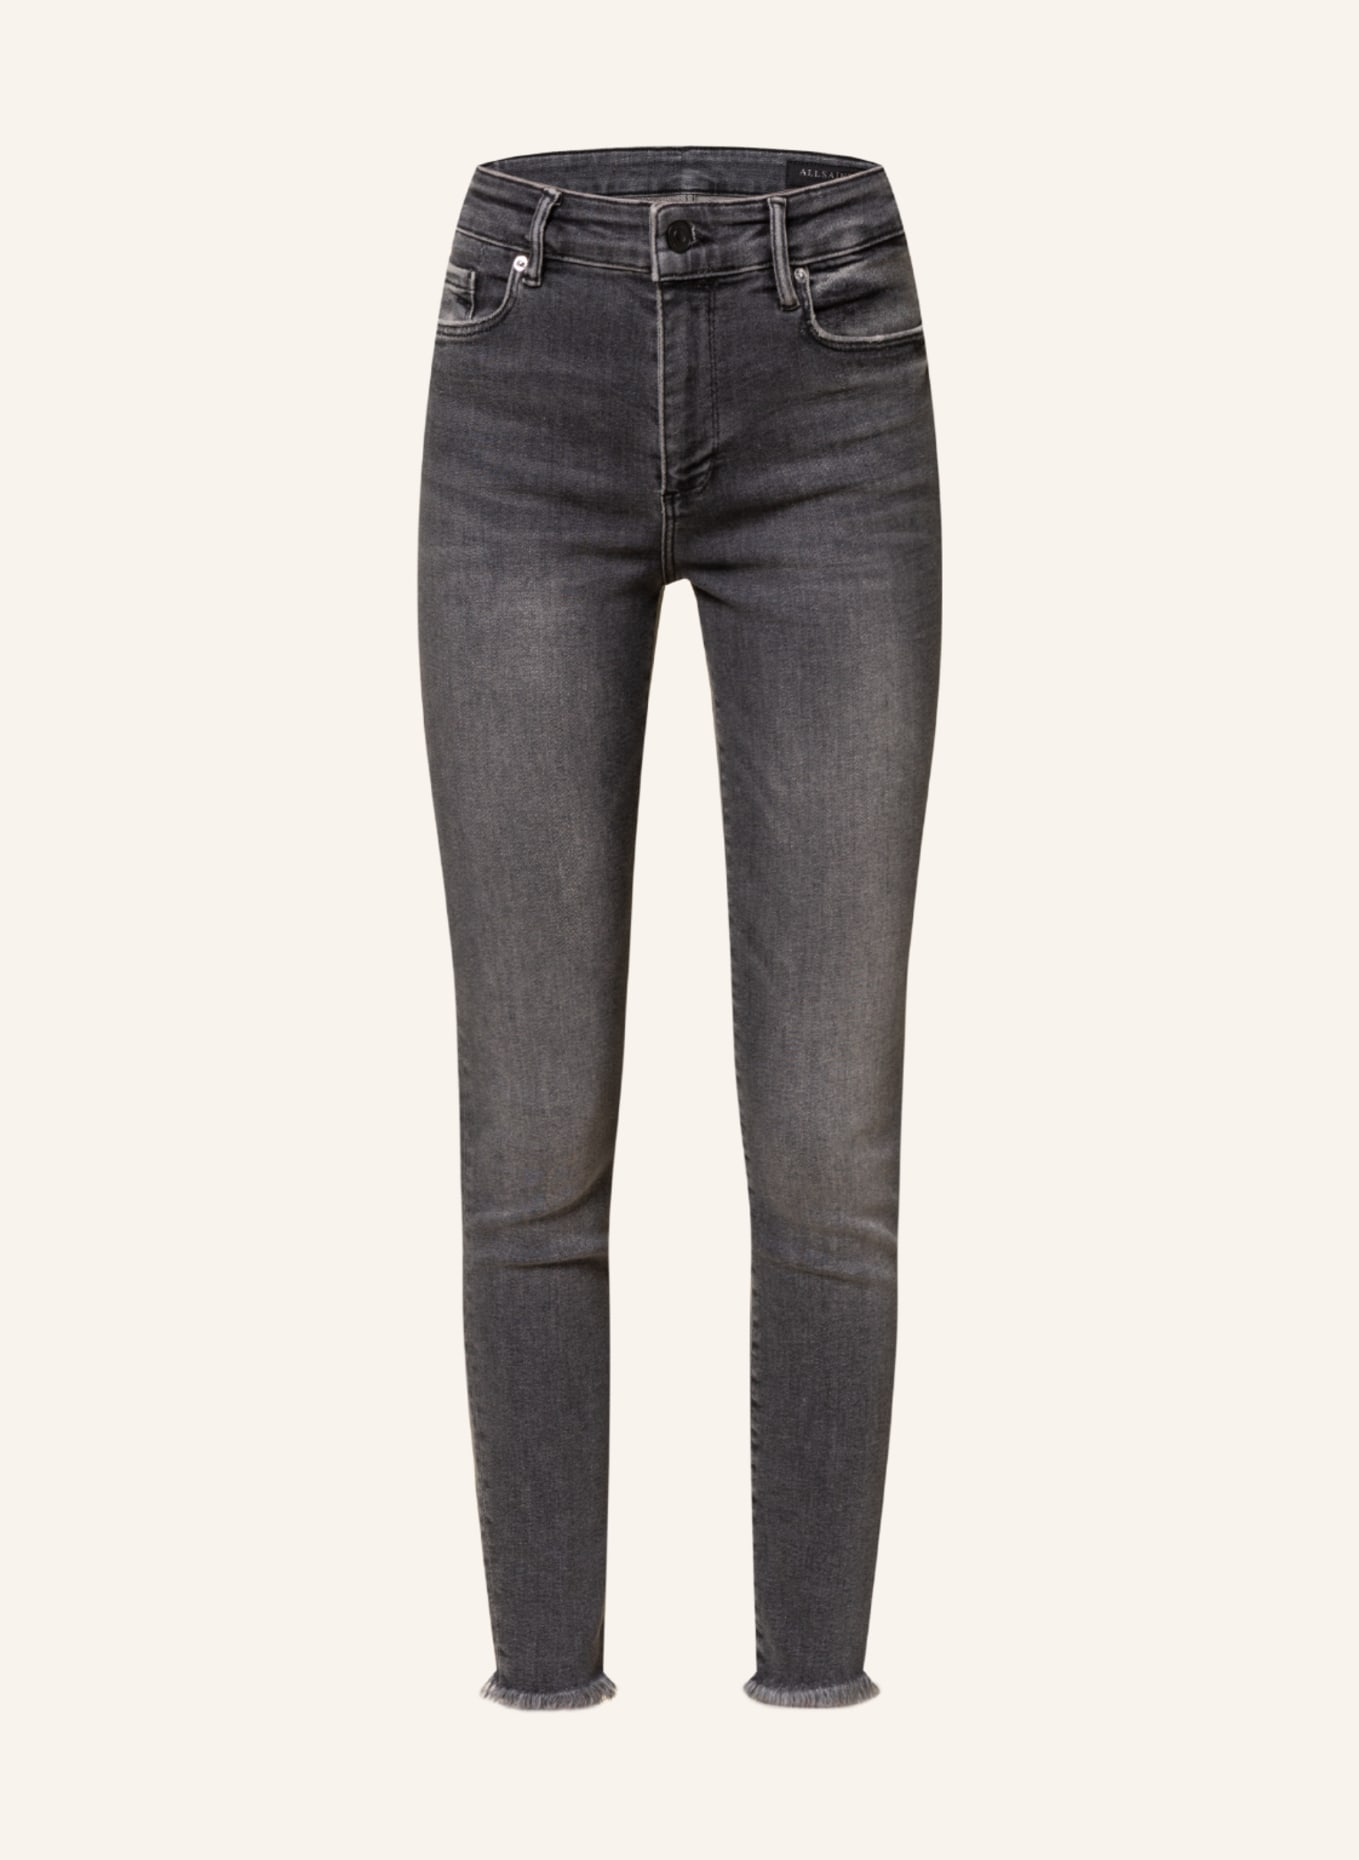 ALLSAINTS Skinny Jeans MILLER, Farbe: 162 Washed Black (Bild 1)